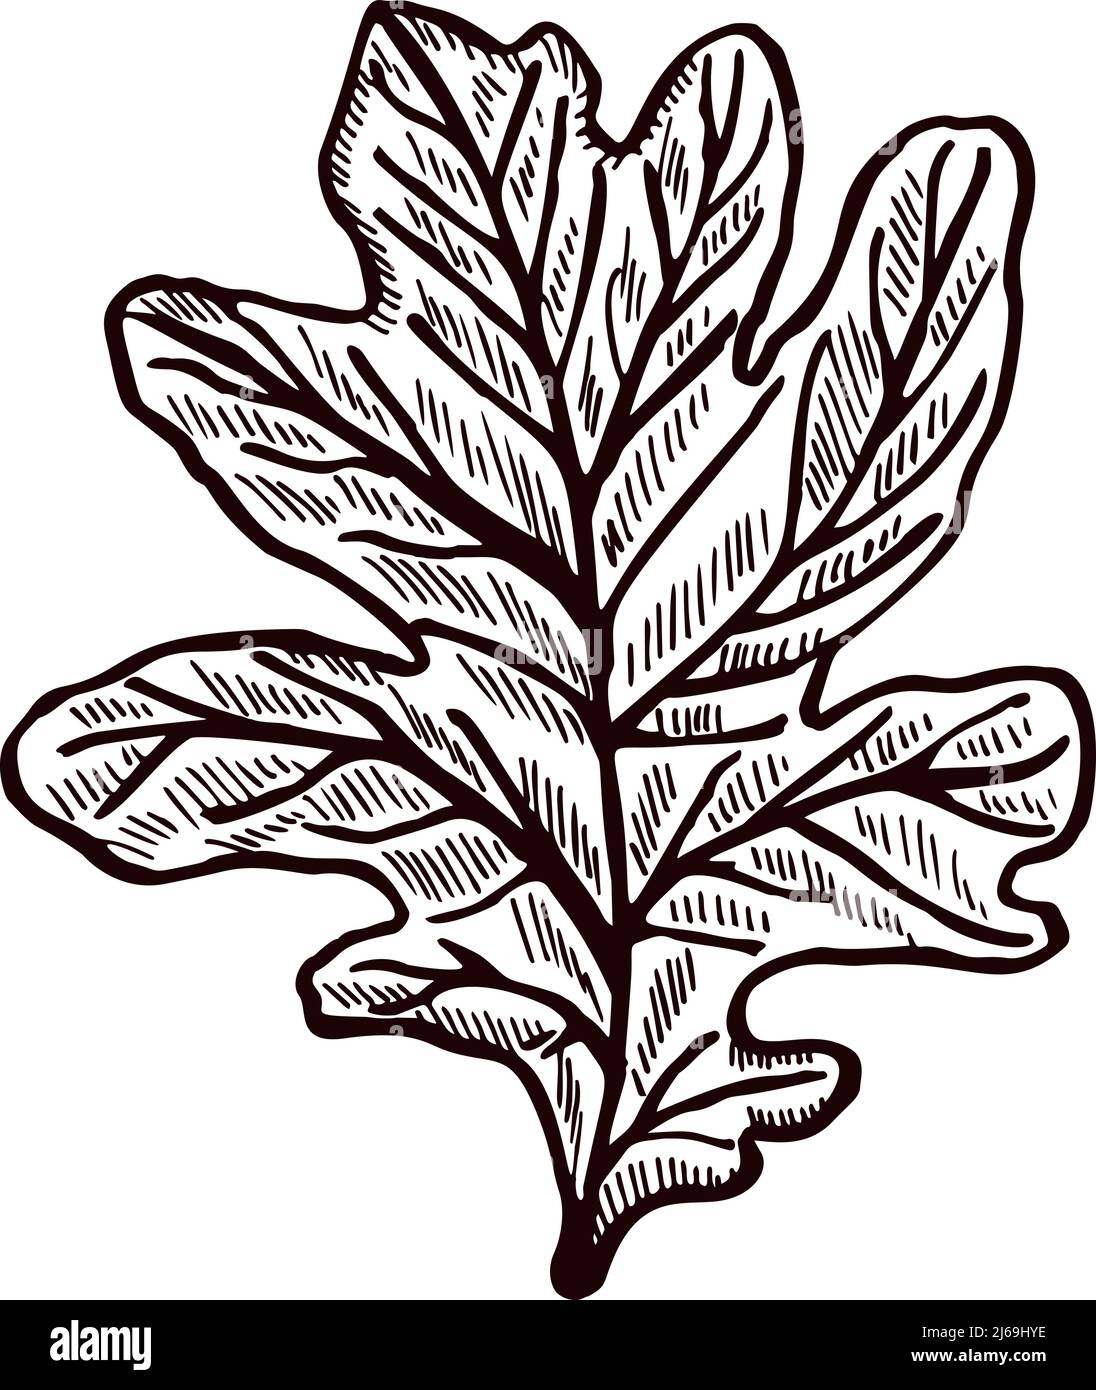 Foglia di rovere incisa su fondo bianco isolato. Fogliame botanico vintage dettagliato in stile disegnato a mano. Disegno vettoriale per poster, stampa, libro i Illustrazione Vettoriale